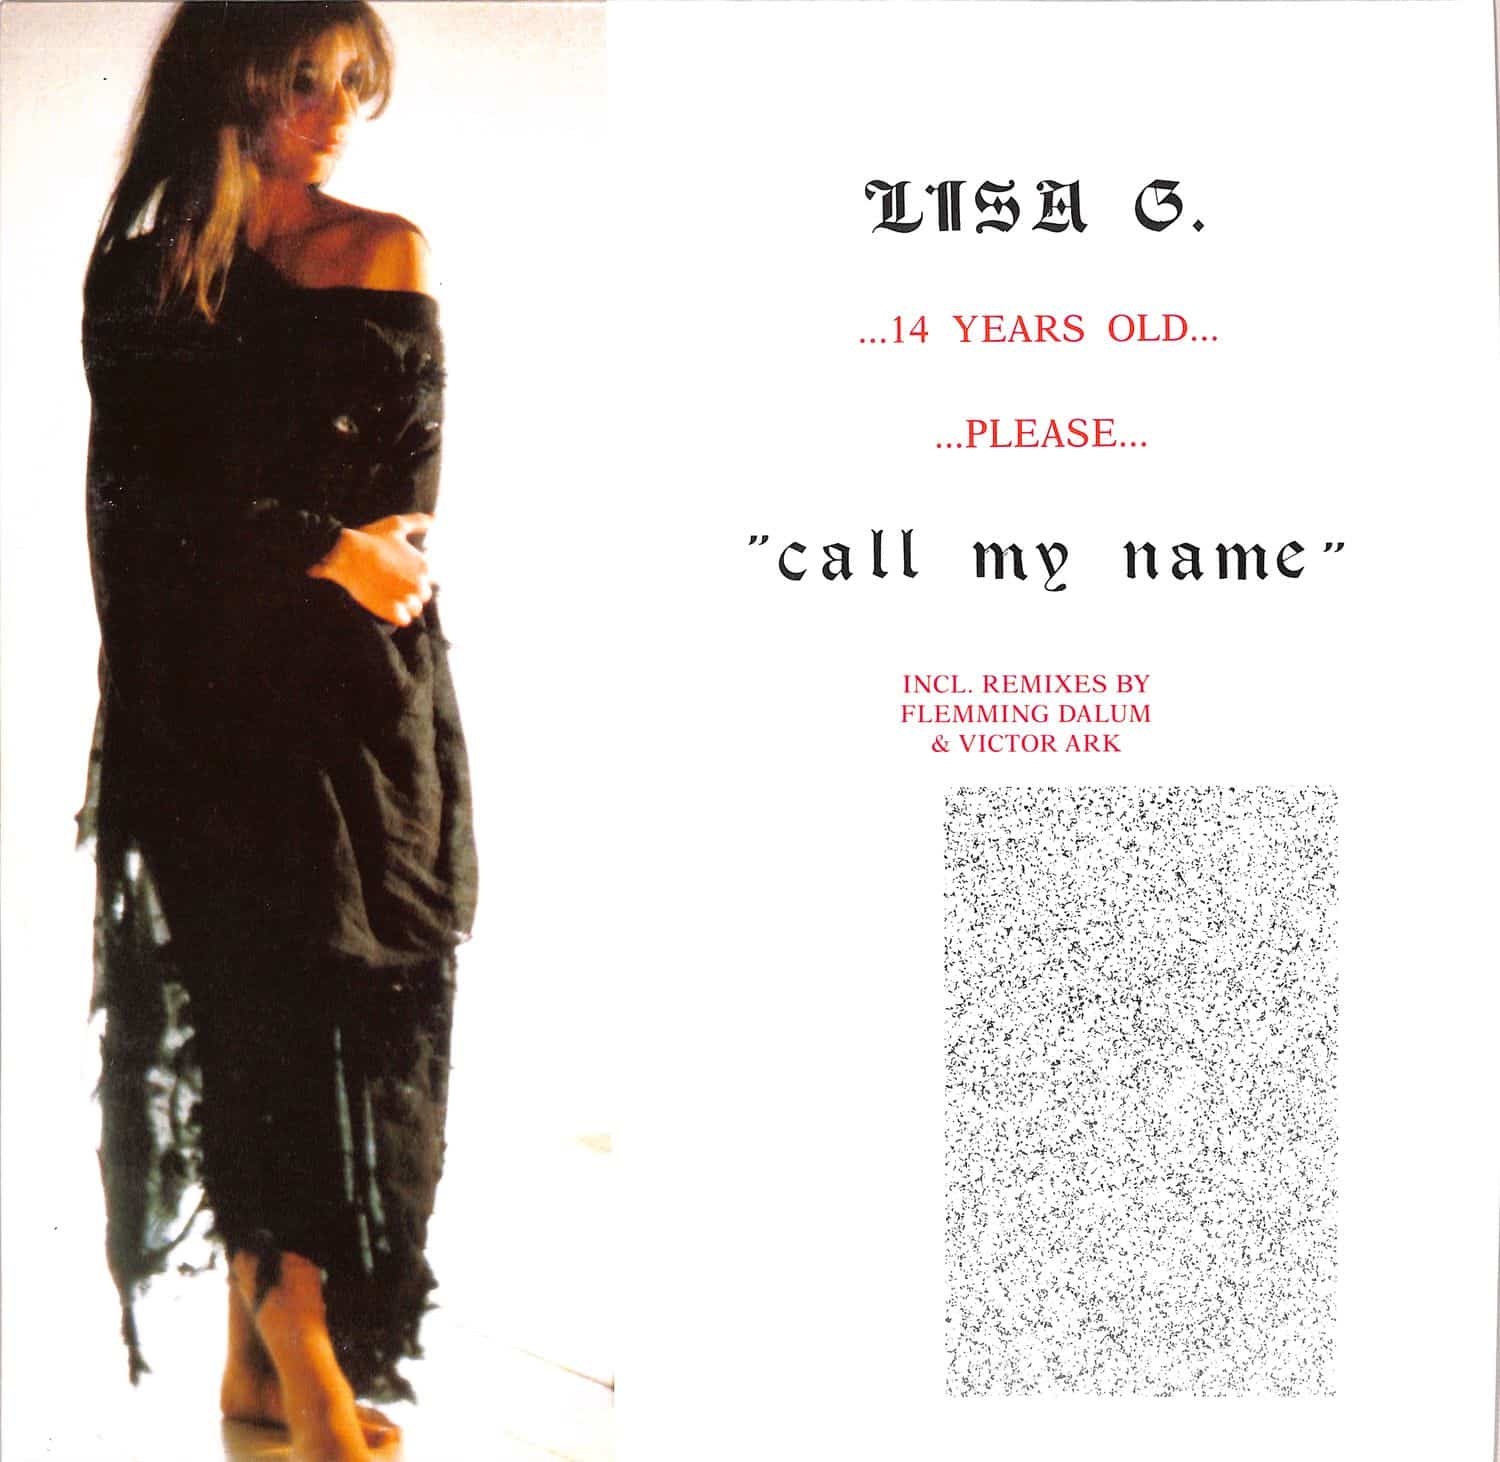 Lisa G. - CALL MY NAME